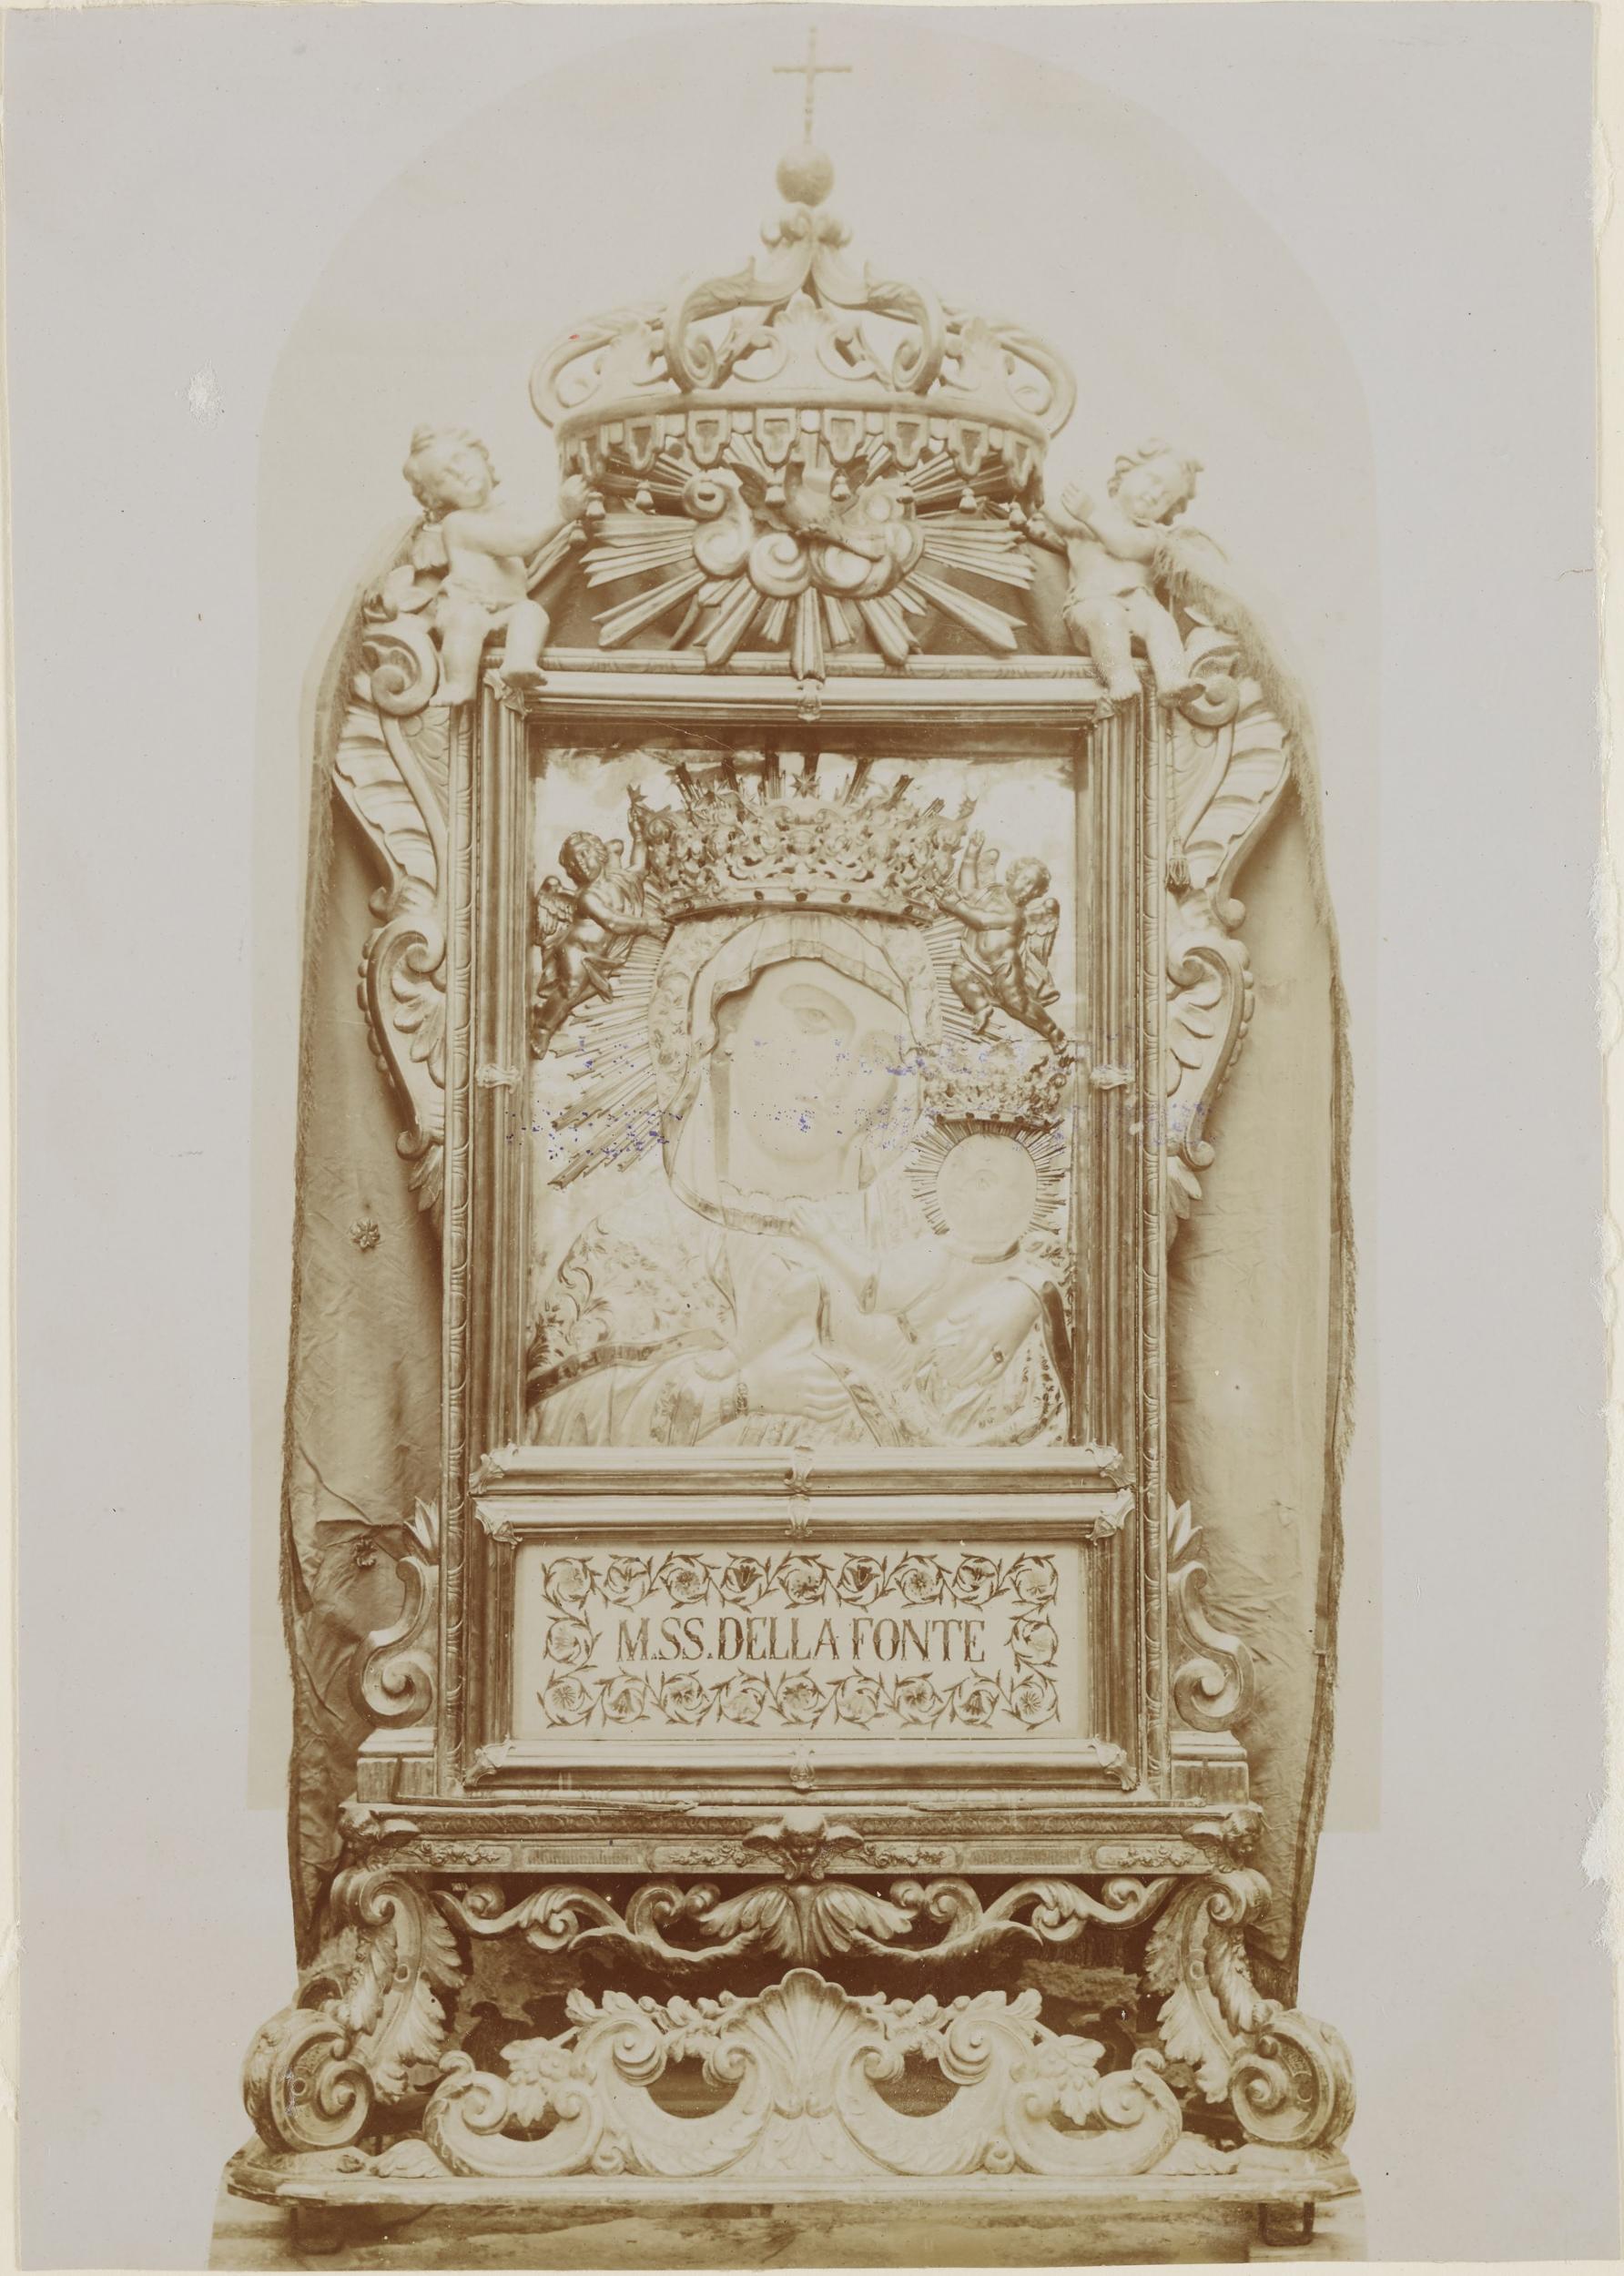 Fotografo non identificato, Canosa di Puglia - Chiesa di S. Sabino, Madonna della fonte, 1891-1910, aristotipo, MPI143590